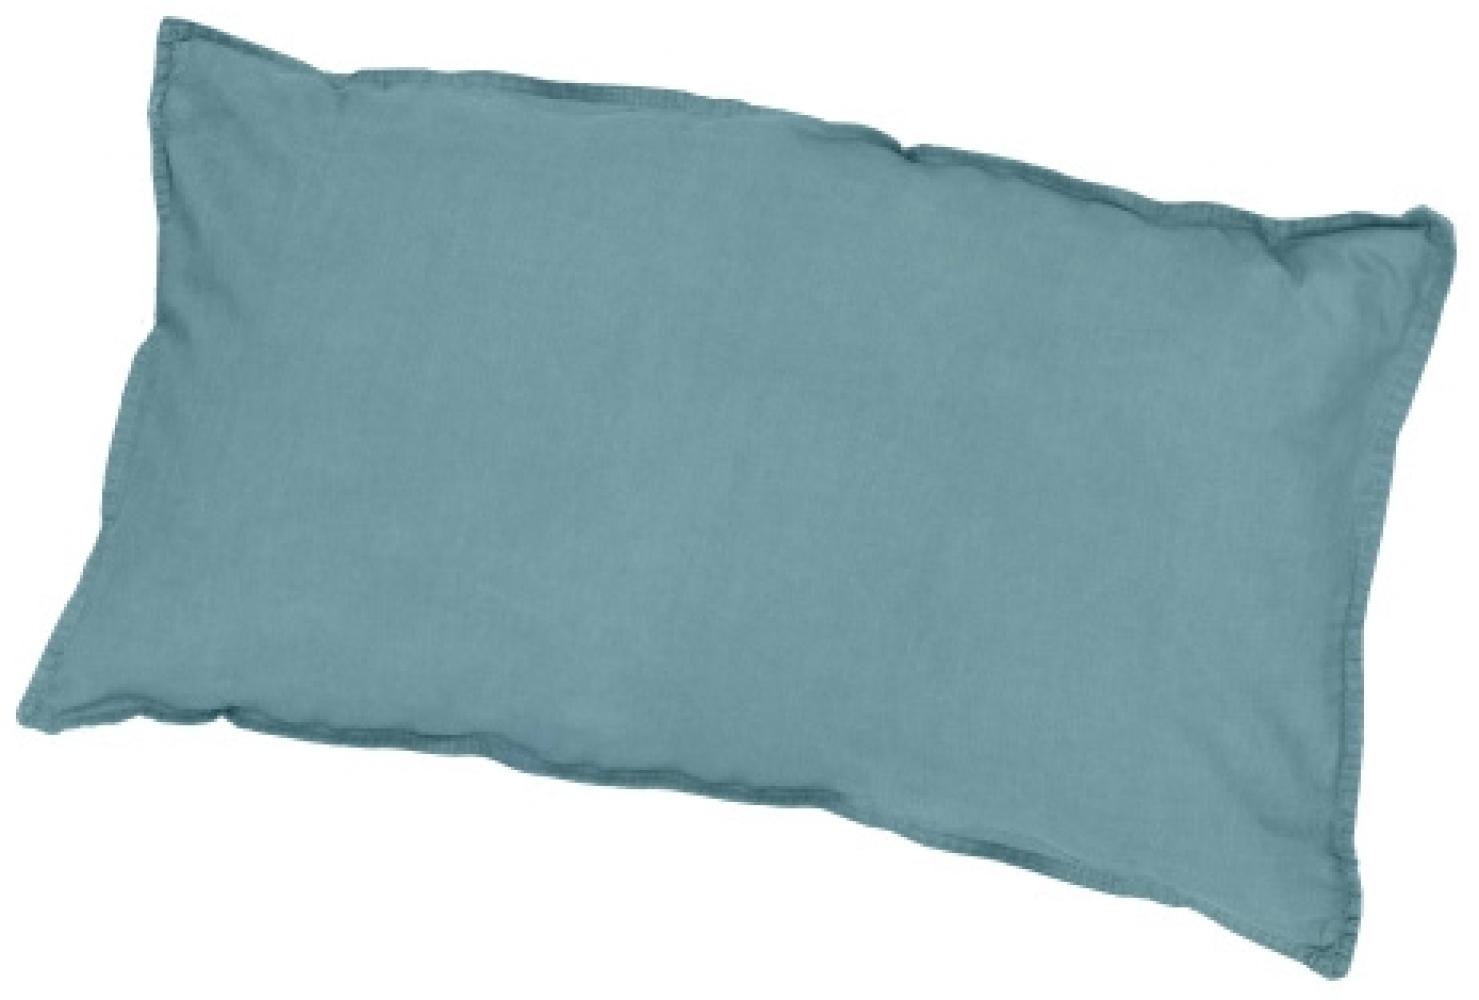 Traumhaft gut schlafen Stone-Washed-Bettwäsche aus 100% Baumwolle, in versch. Farben und Größen : 40 x 80 cm : Jade Bild 1